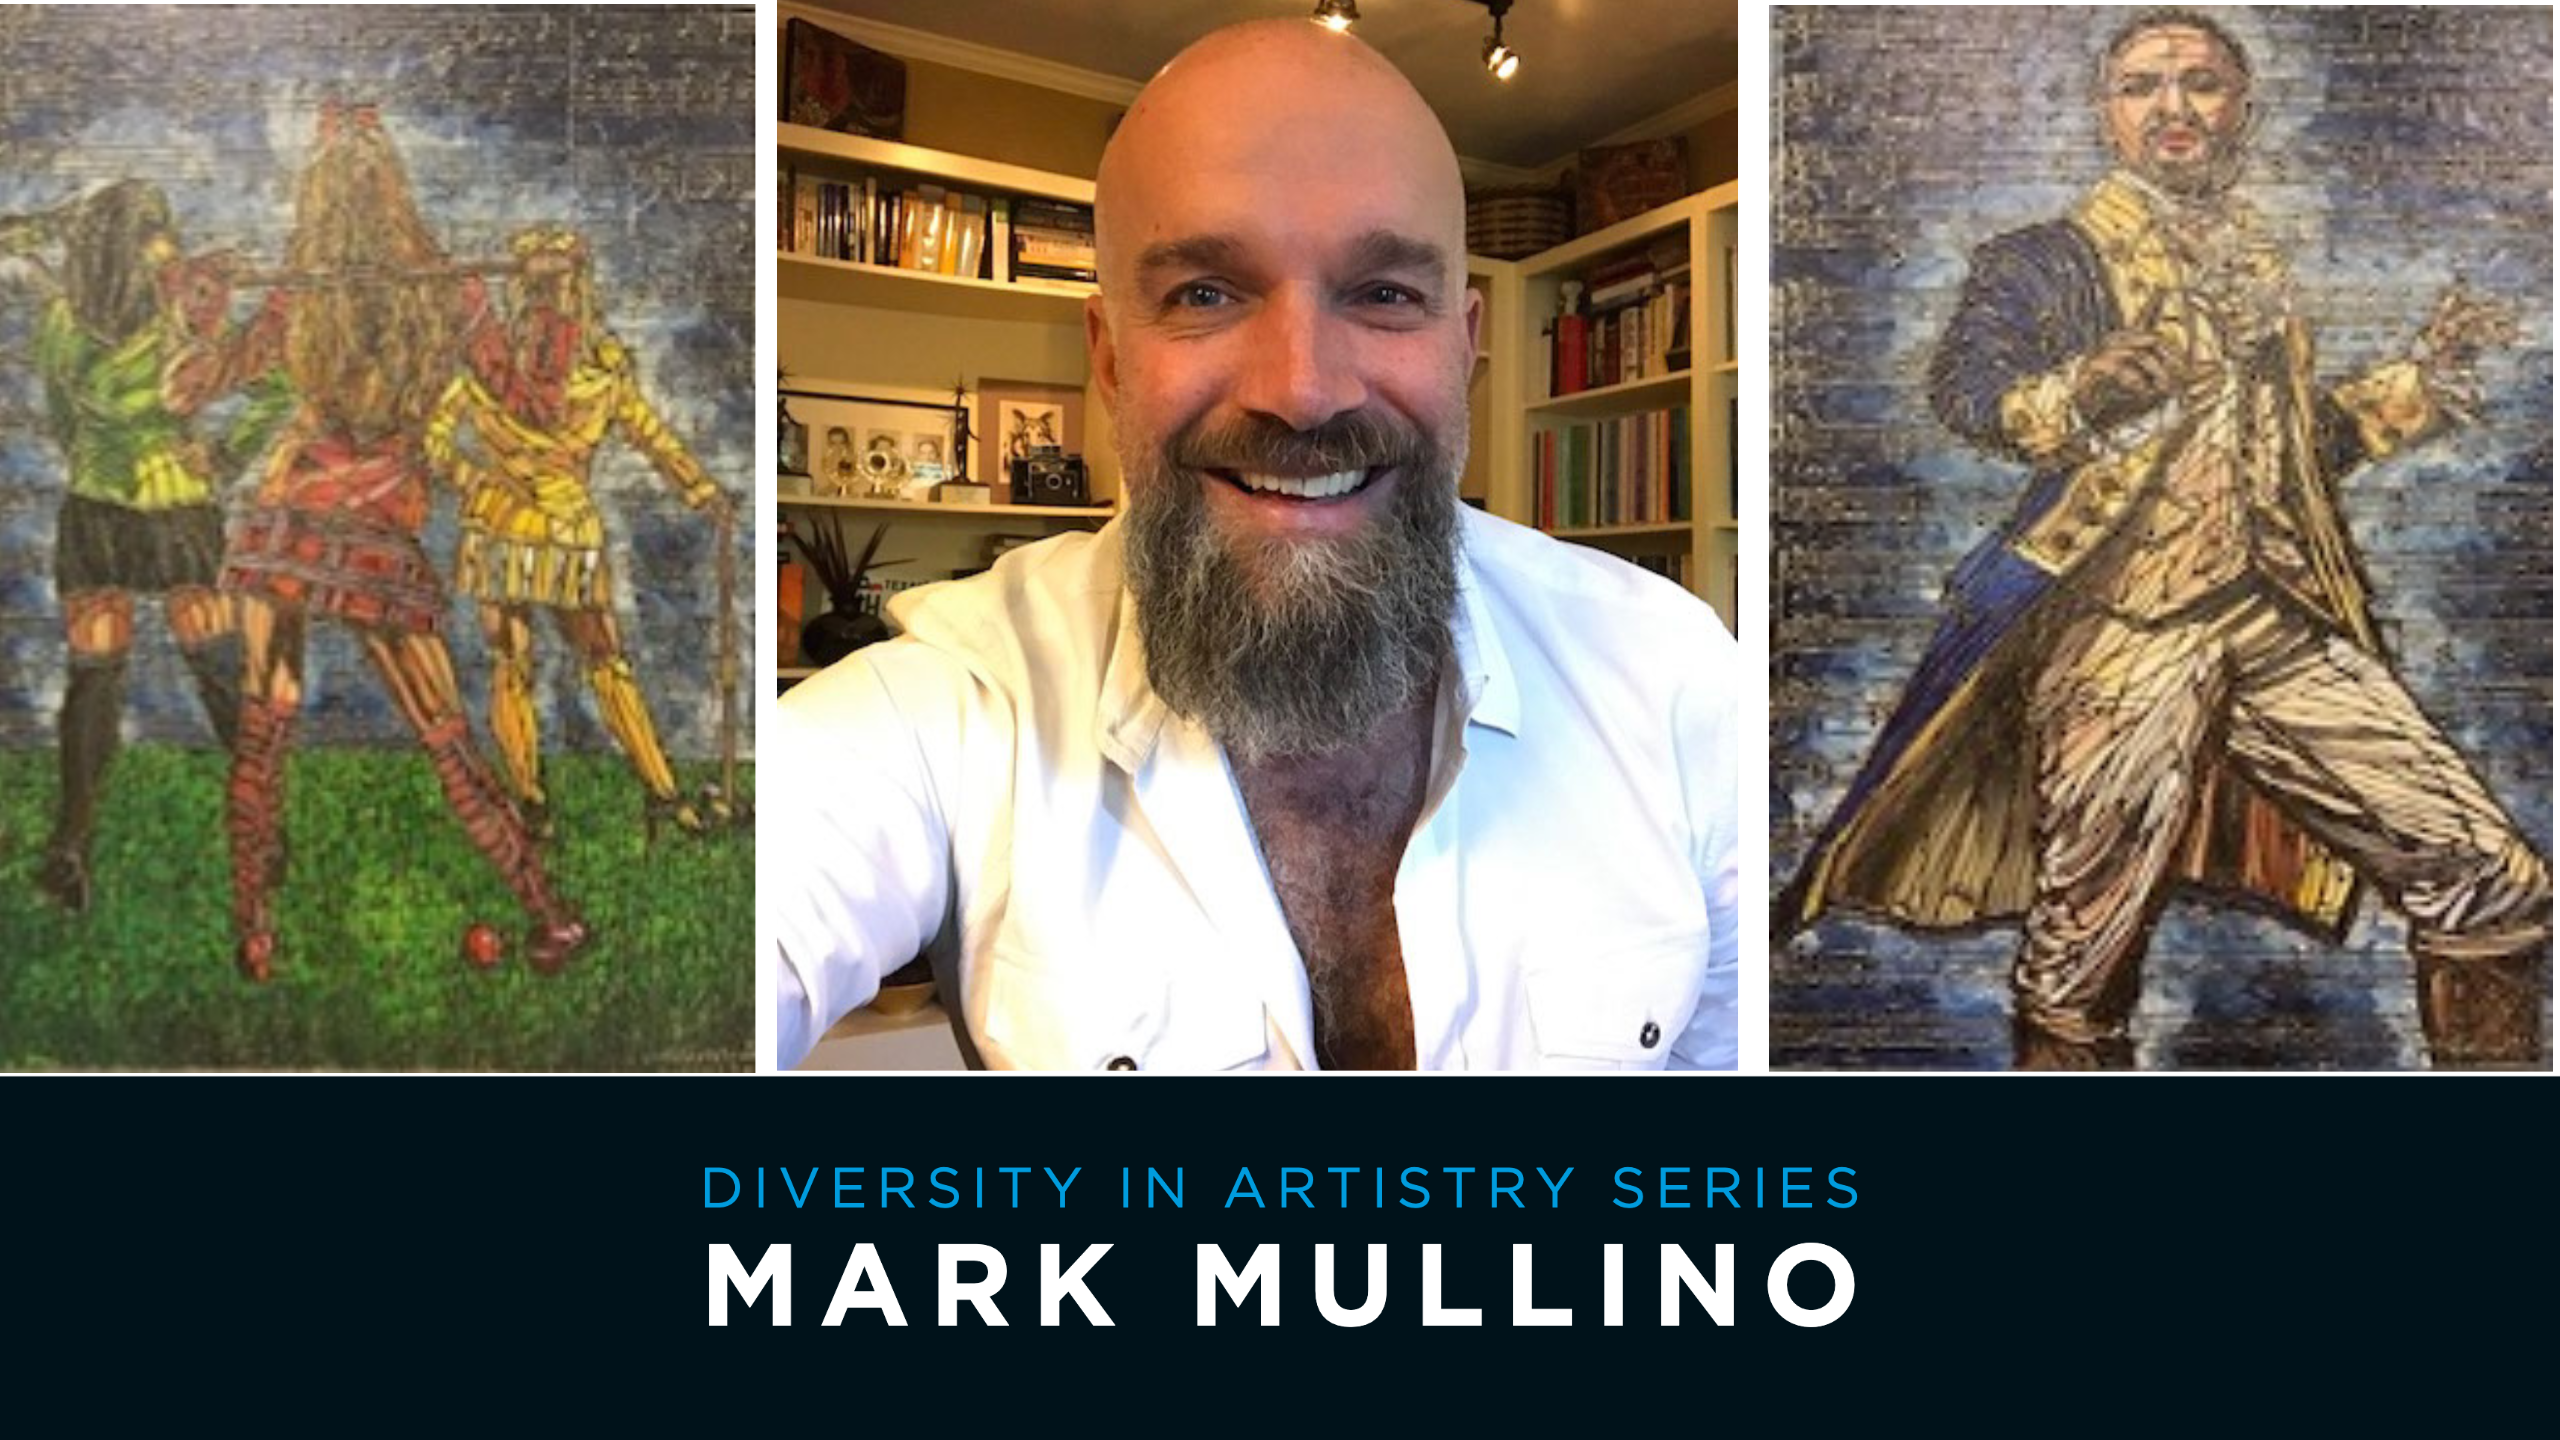 Diversity in Artistry Series - Mark Mullino